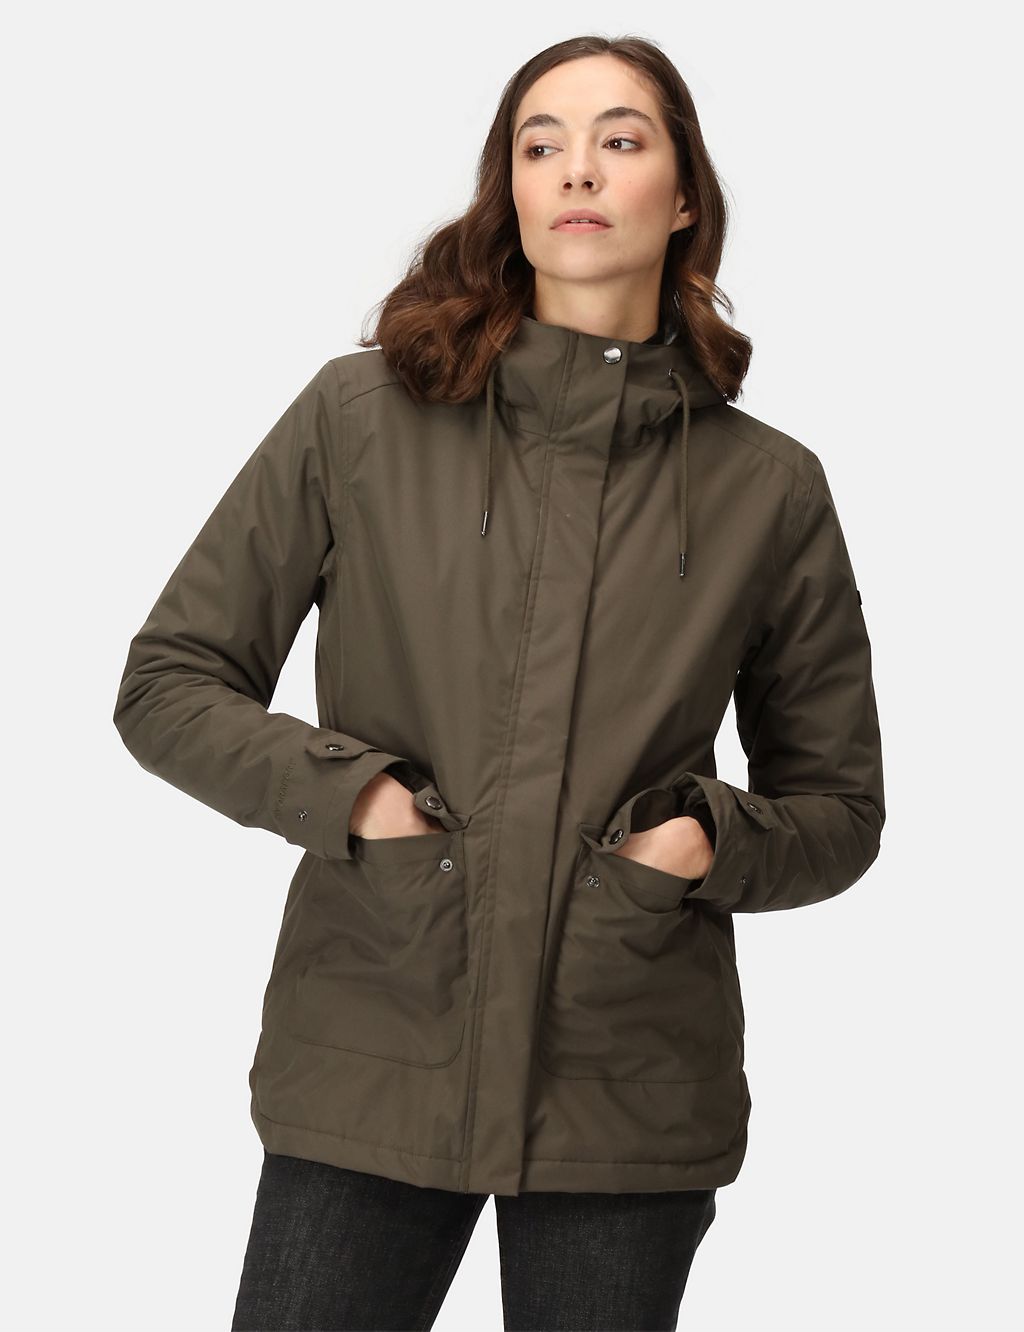 Broadia Waterproof Hooded Raincoat 4 of 8